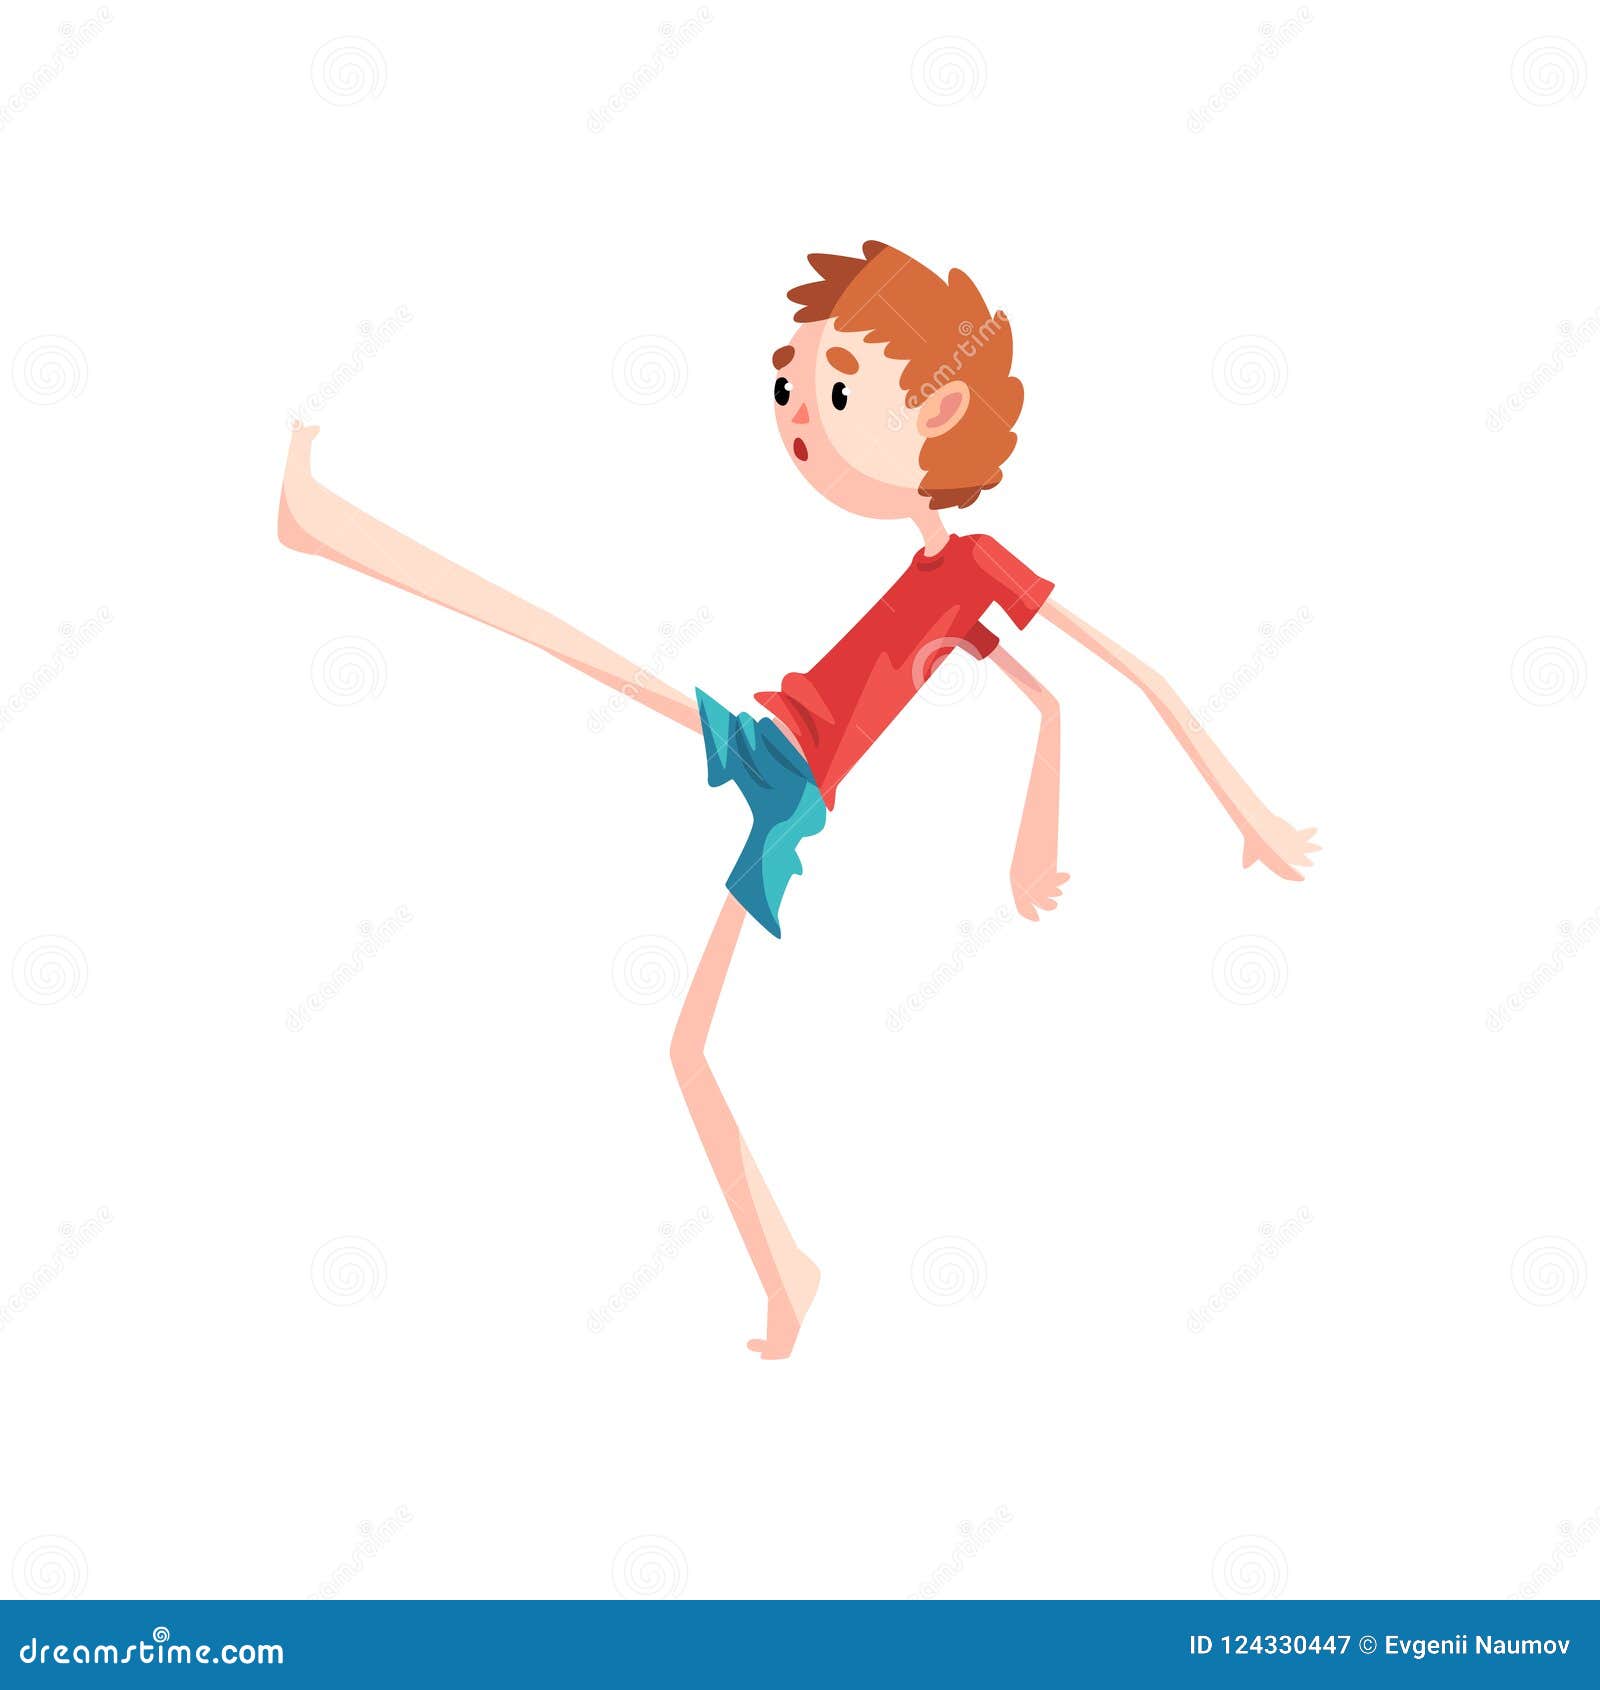 Can t stand doing. Мальчик стоит на одной ноге рисунок. Персонажи с одной ногой. Stand on one Leg. Стоять на 1 ноге картинка для детей.